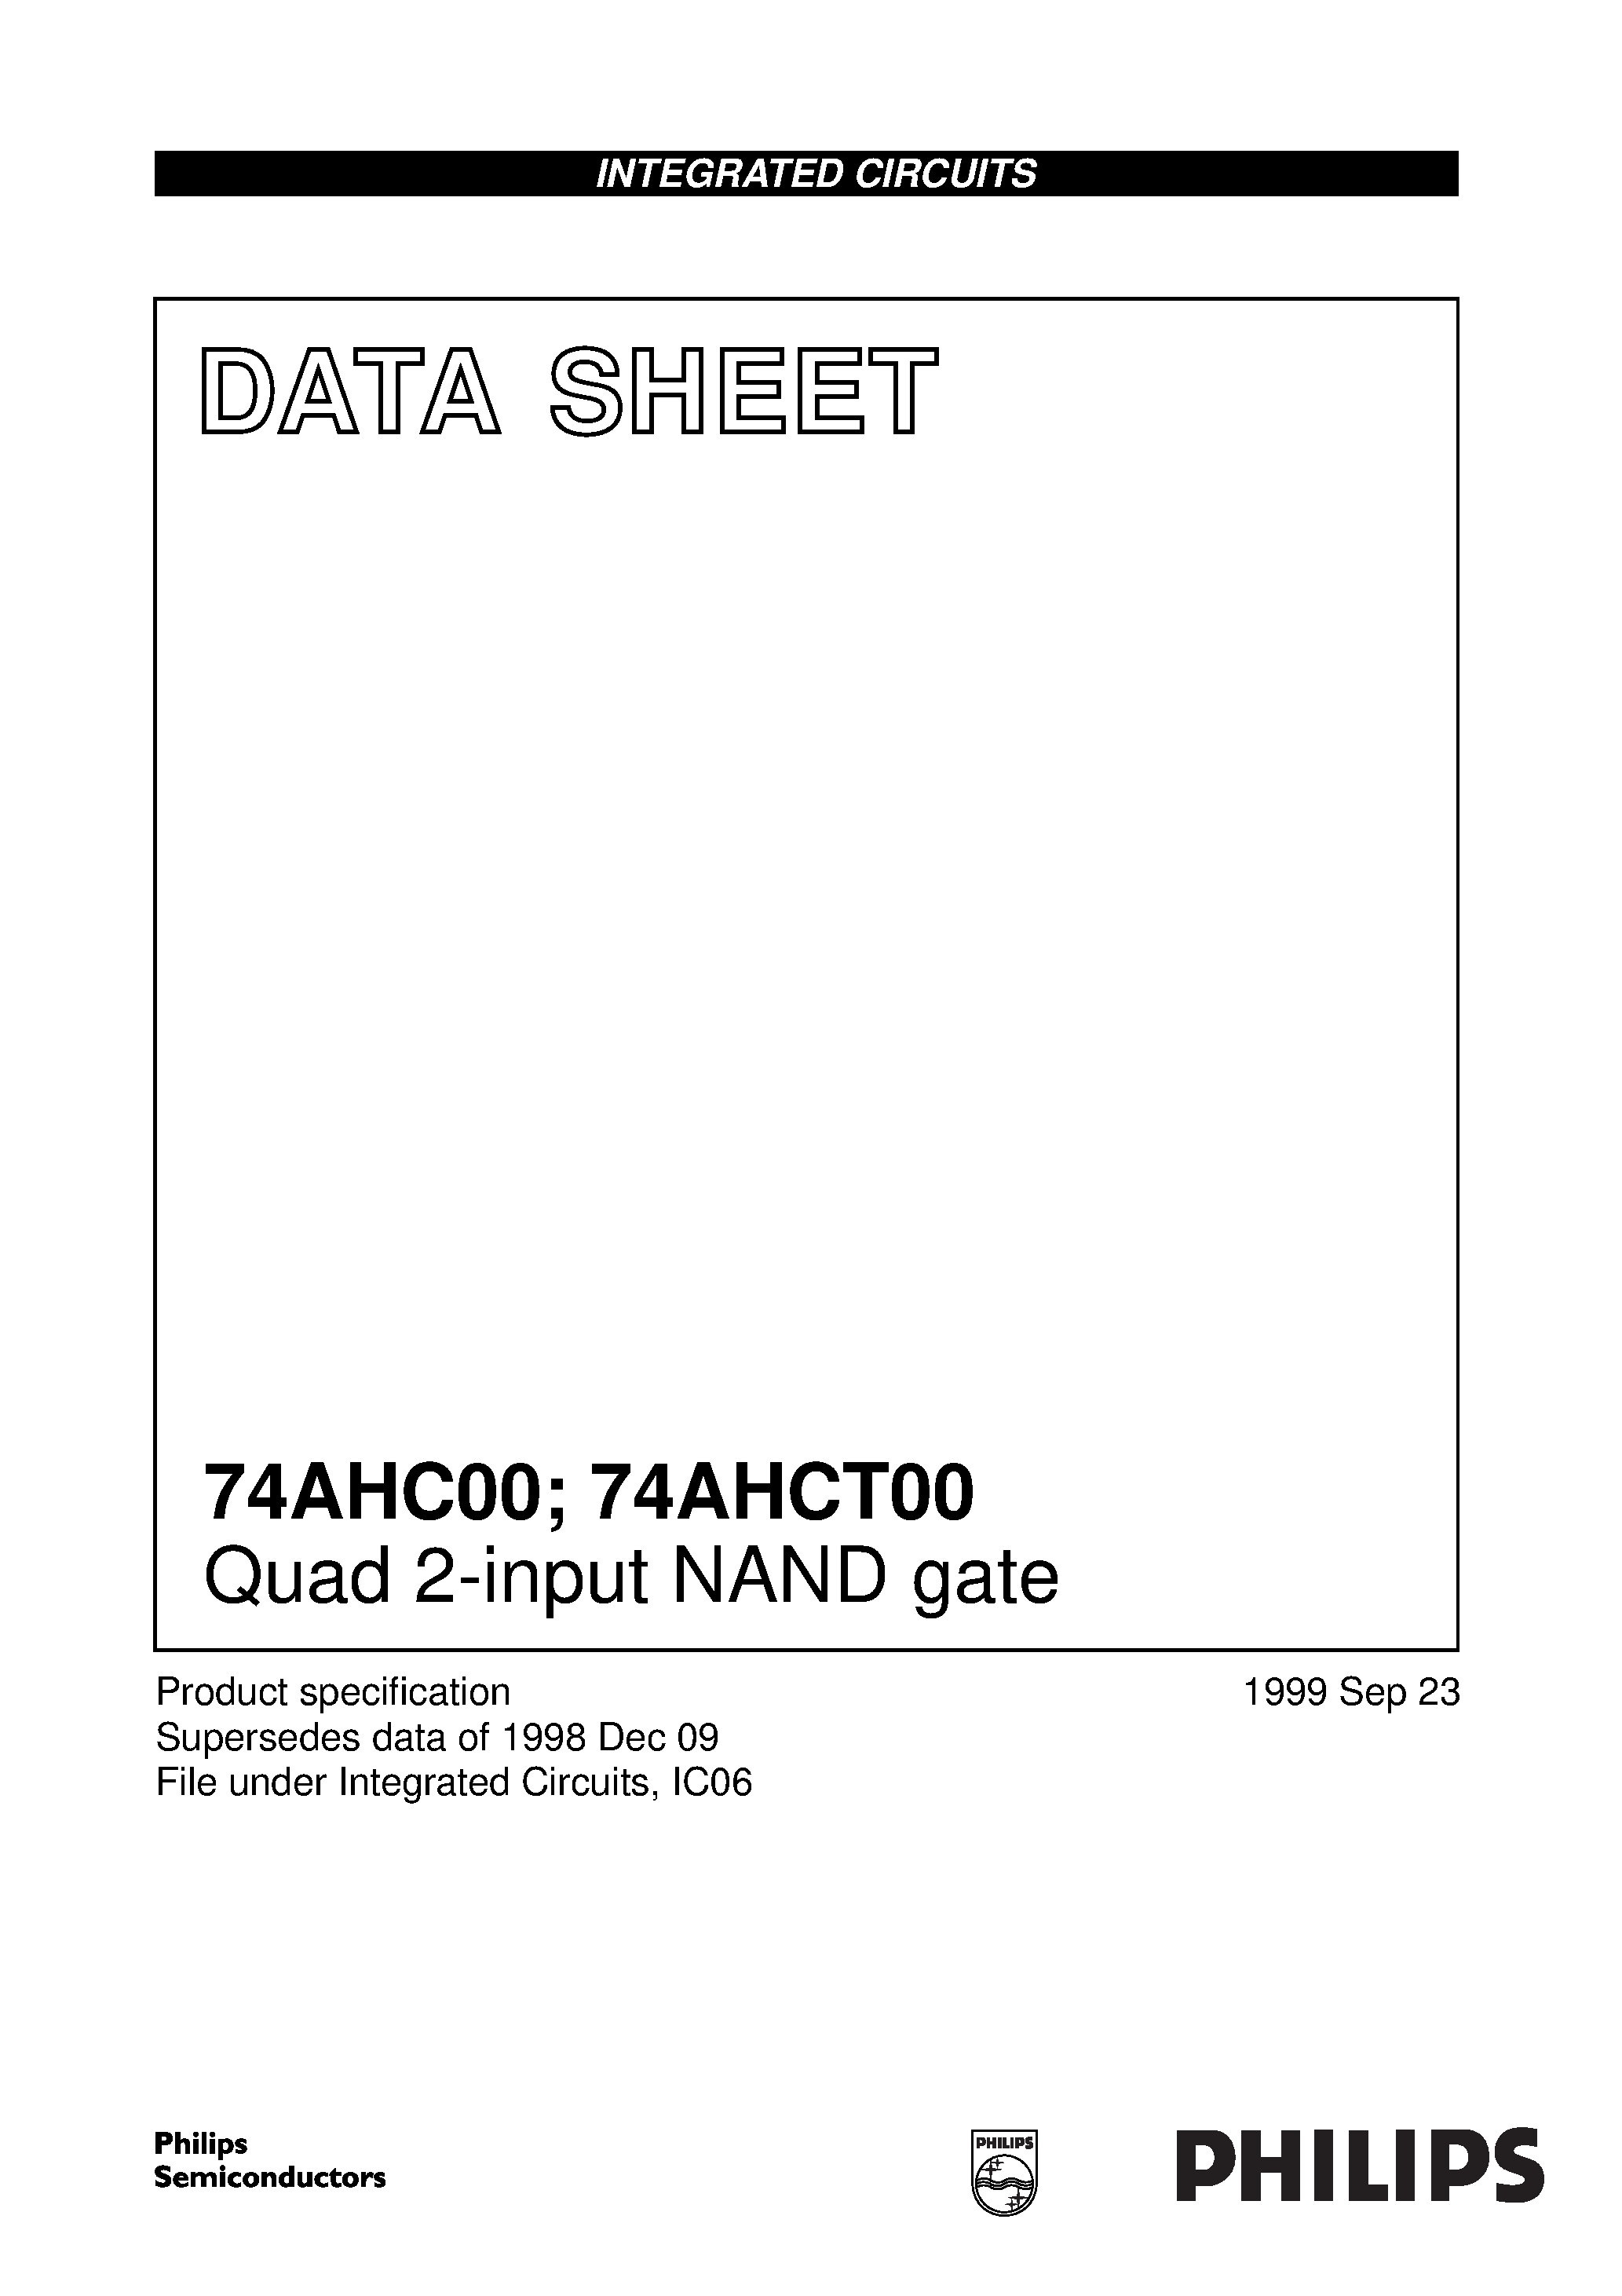 Даташит 74AHC00D - Quad 2-input NAND gate страница 1